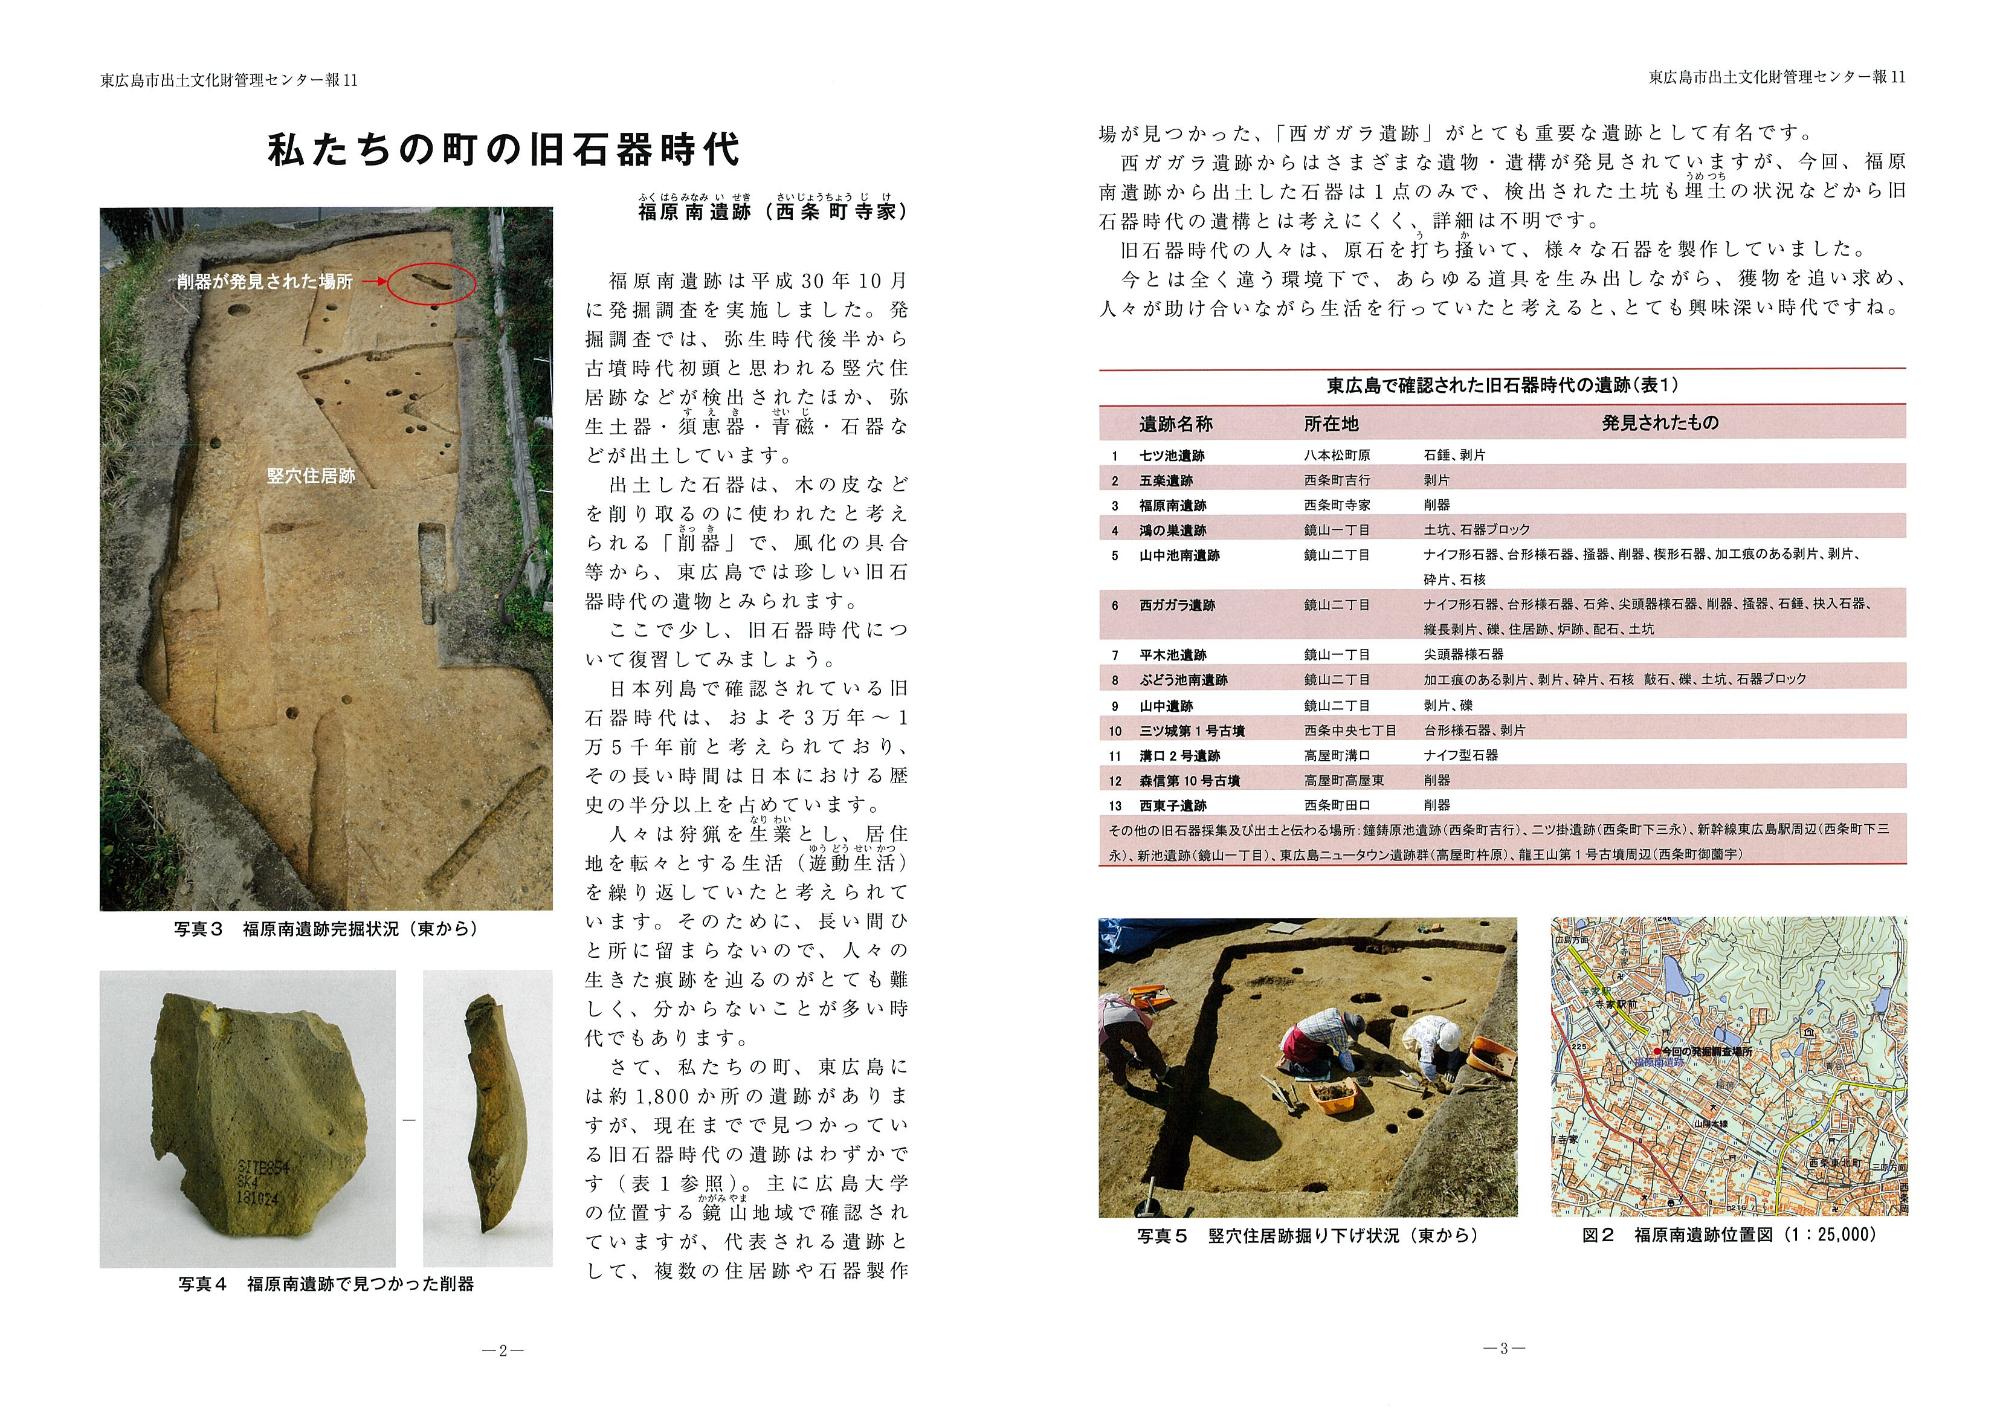 東広島市出土文化財管理センター報『東ひろしまの遺跡』10の写真2